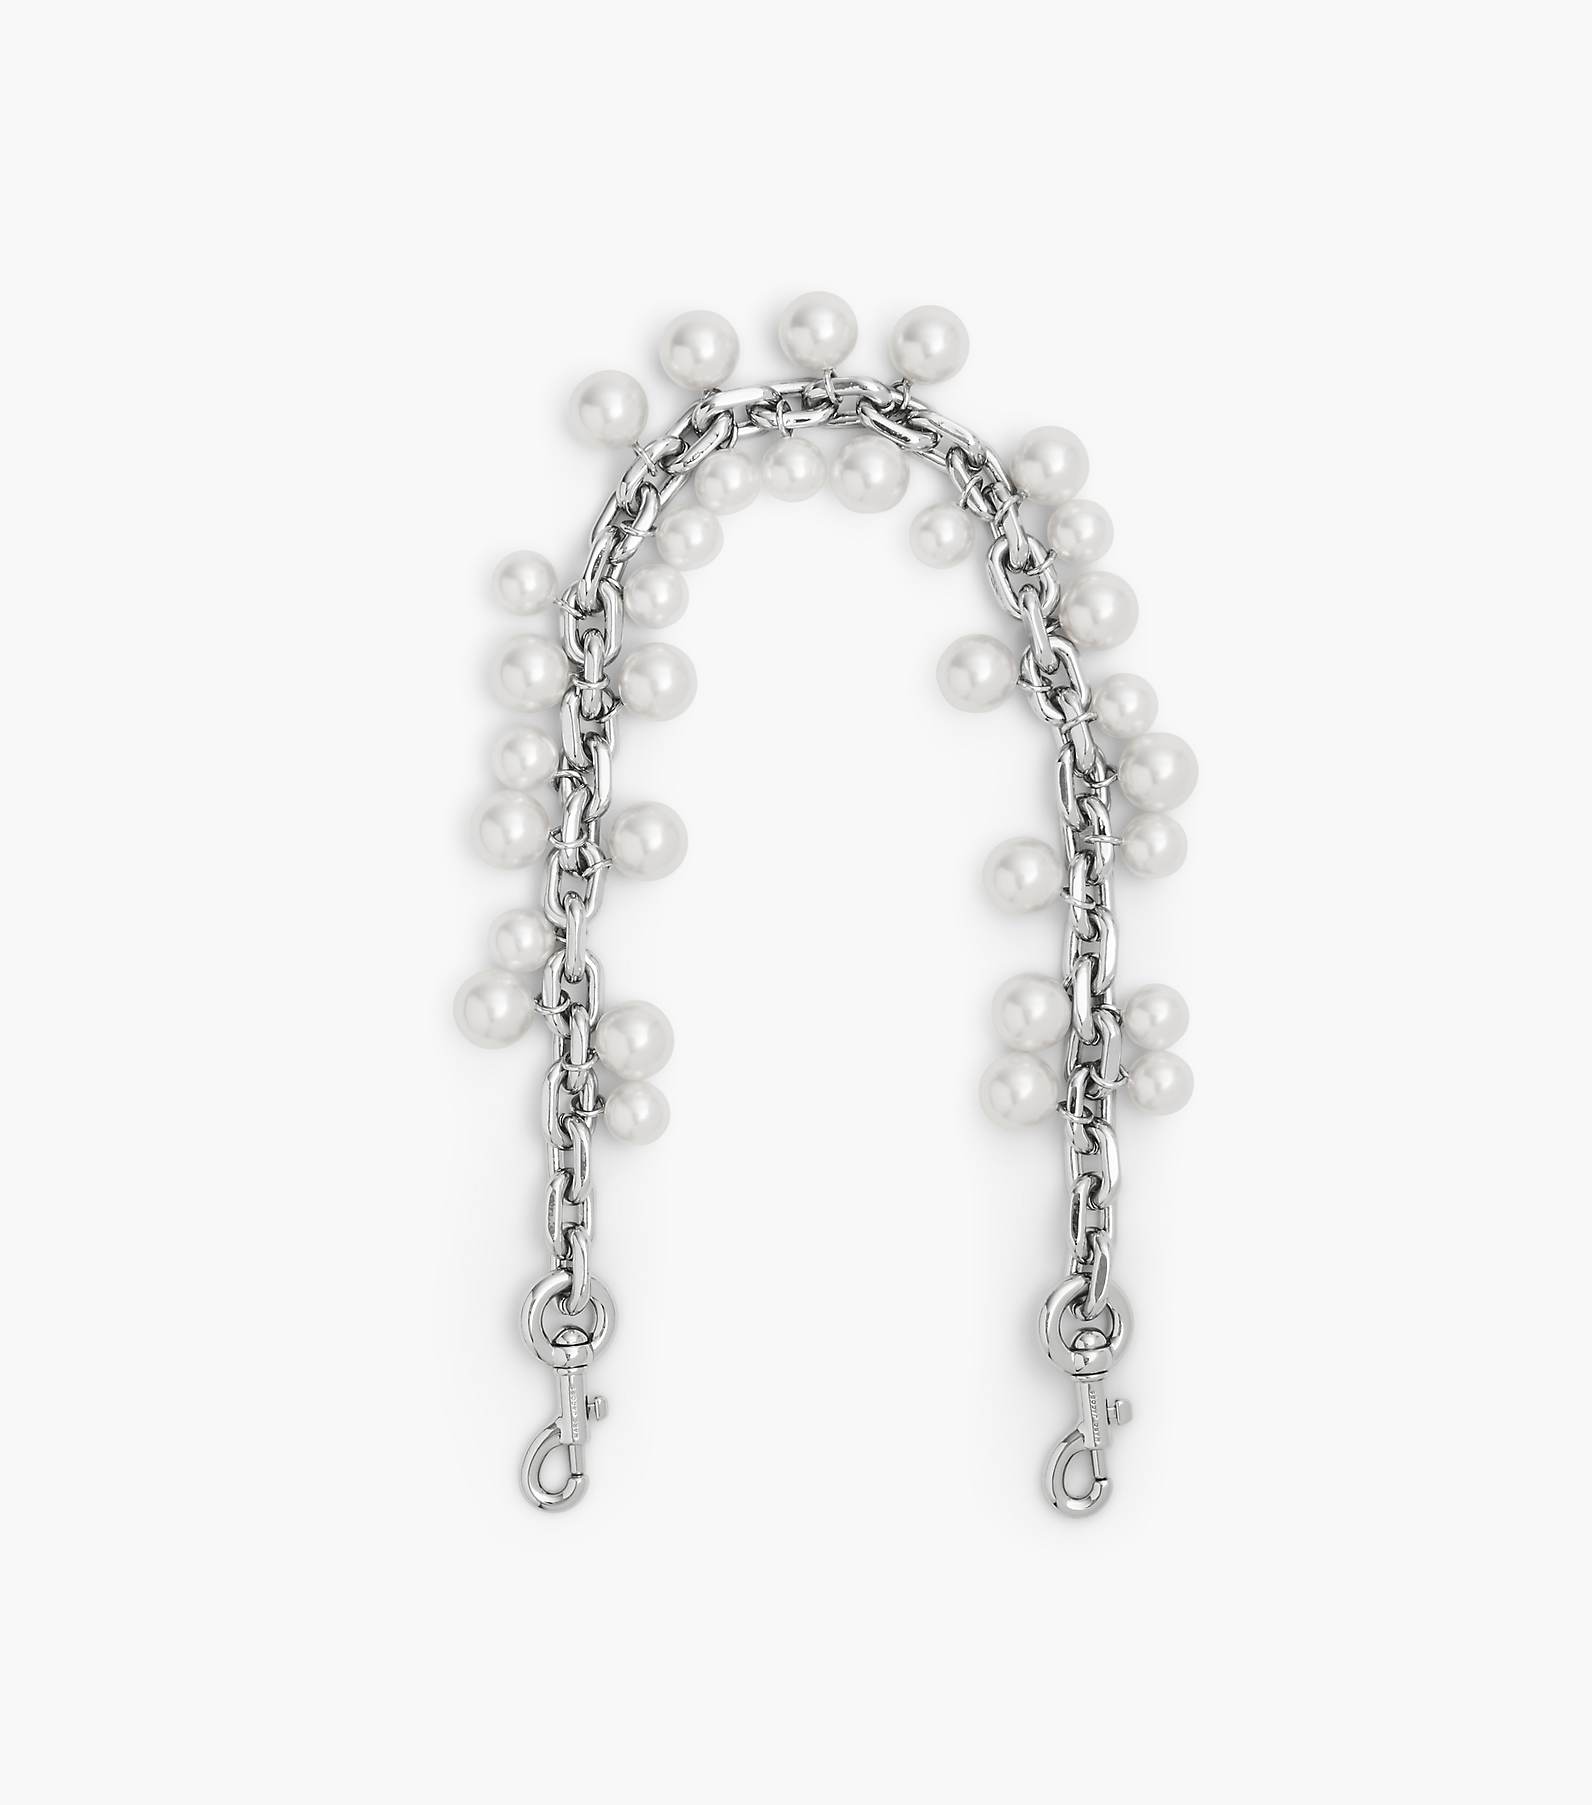  Pearl Chain Handbag-Strap Purse Chain Strap